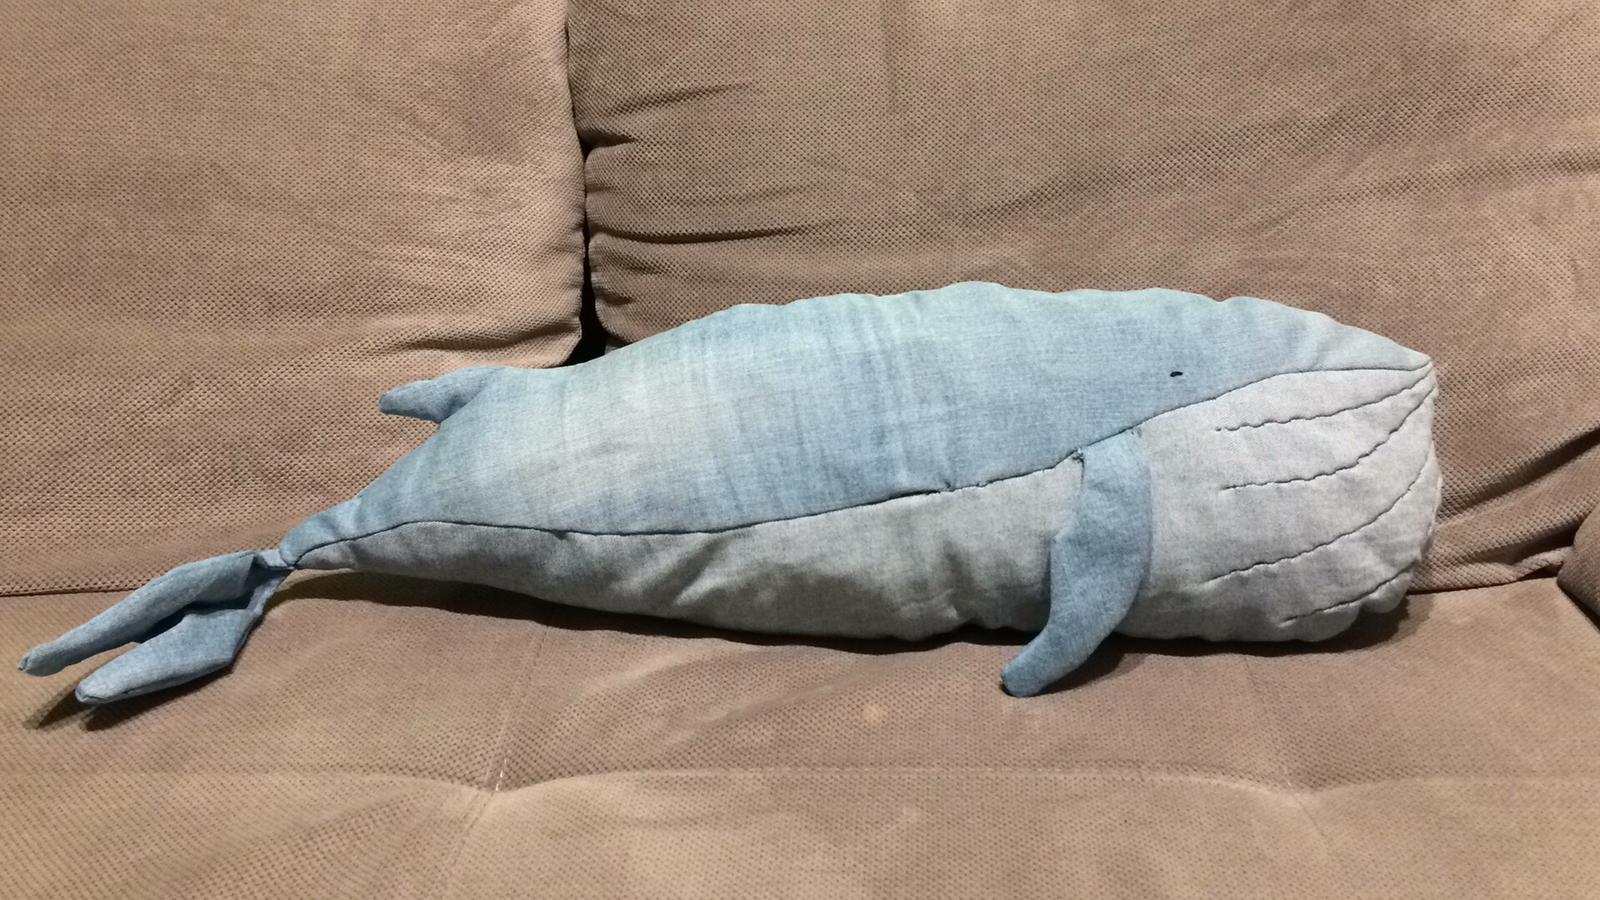 wieloryb wykonanay z jeansu